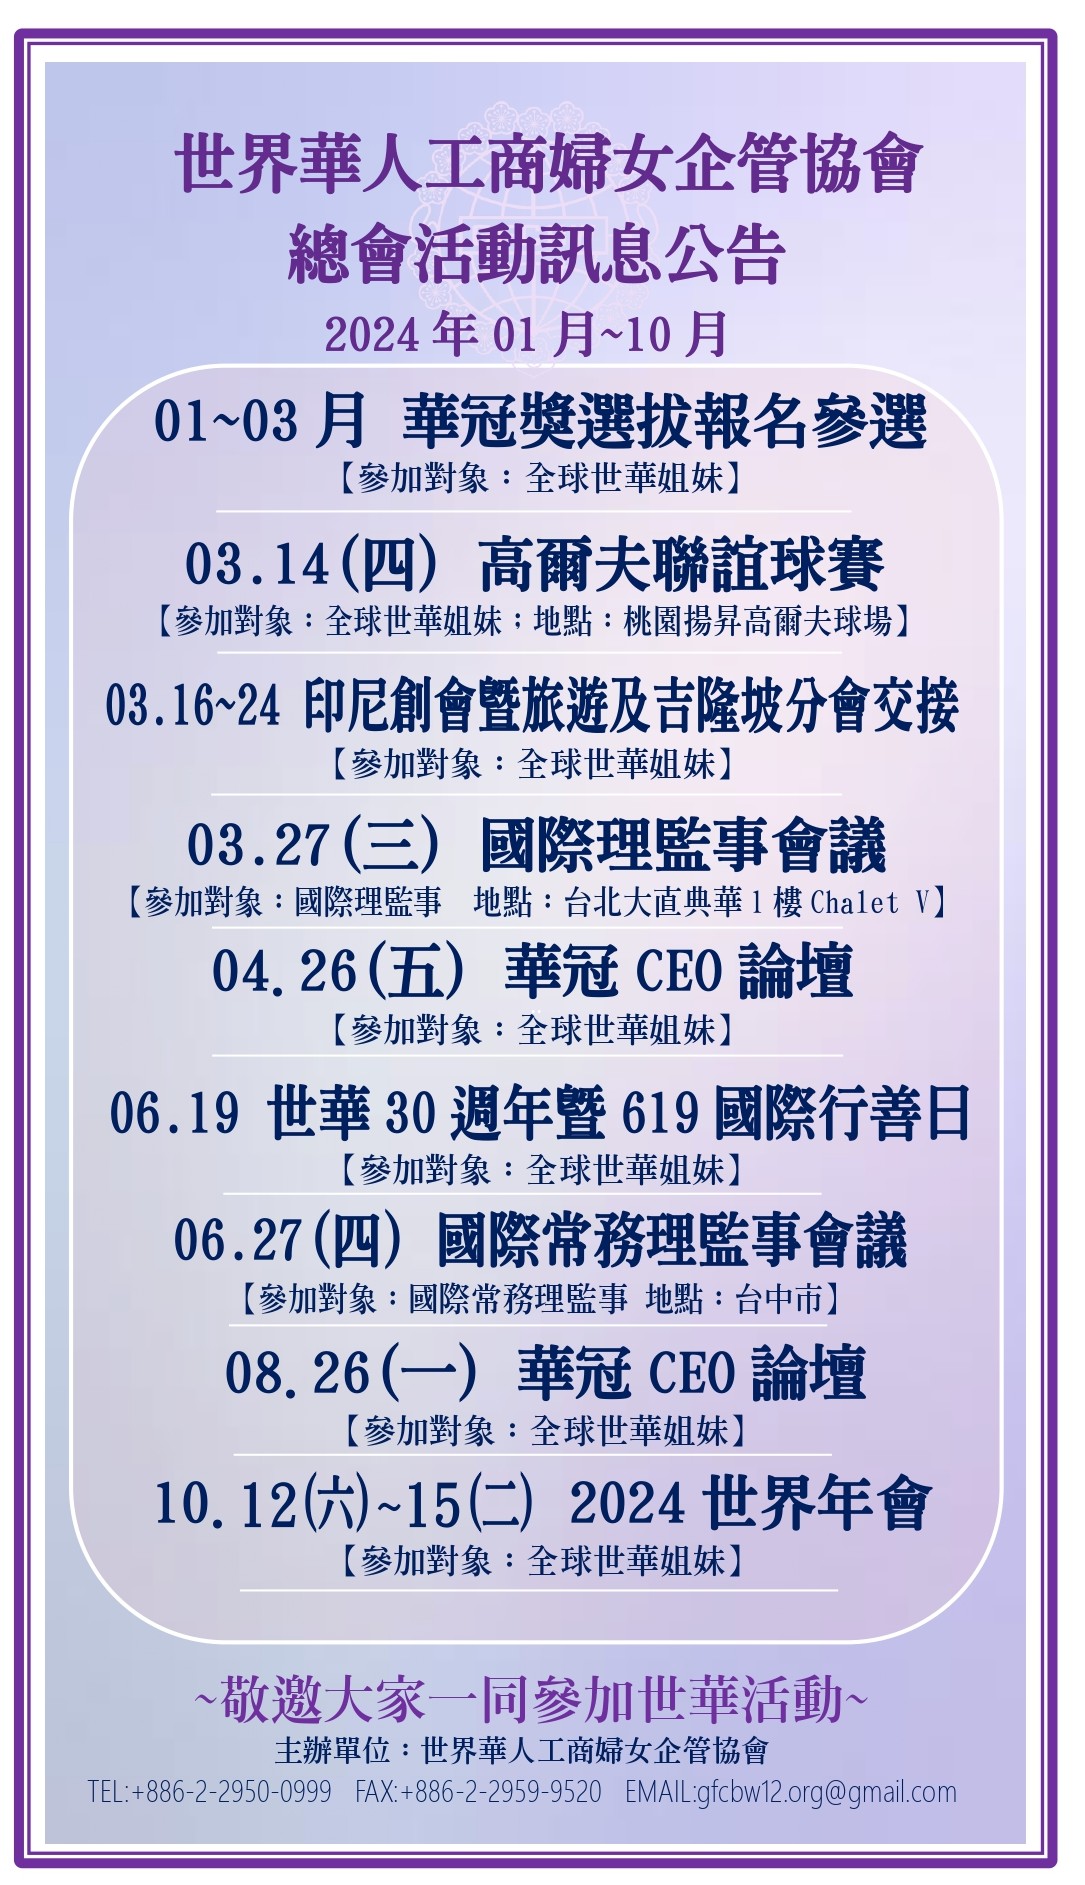 世界華人工商婦女企管協會總會活動訊息公告(2024.01)